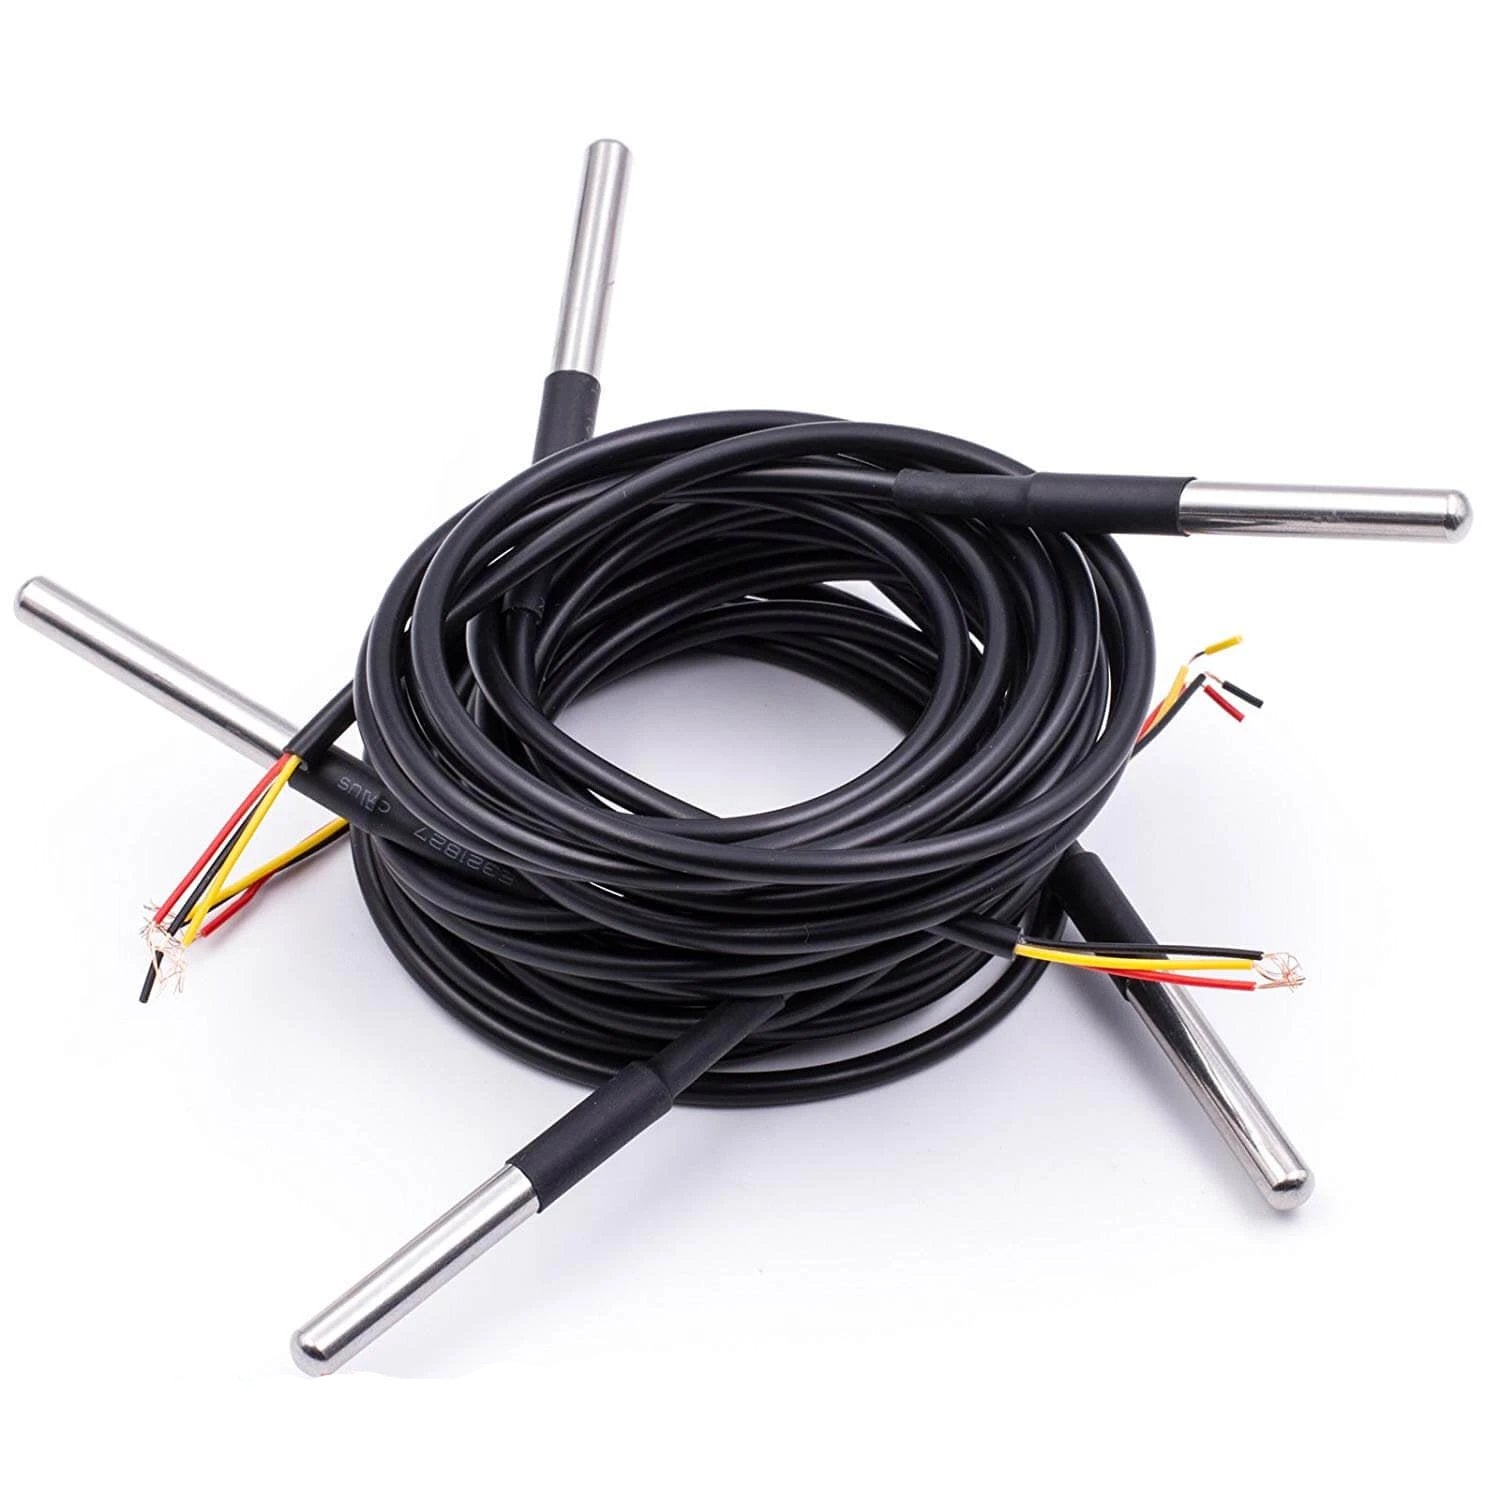 1m Kabel DS18B20 digitaler Edelstahl Temperatursensor Temperaturfühler, wasserdicht kompatibel mit Arduino und Raspberry Pi